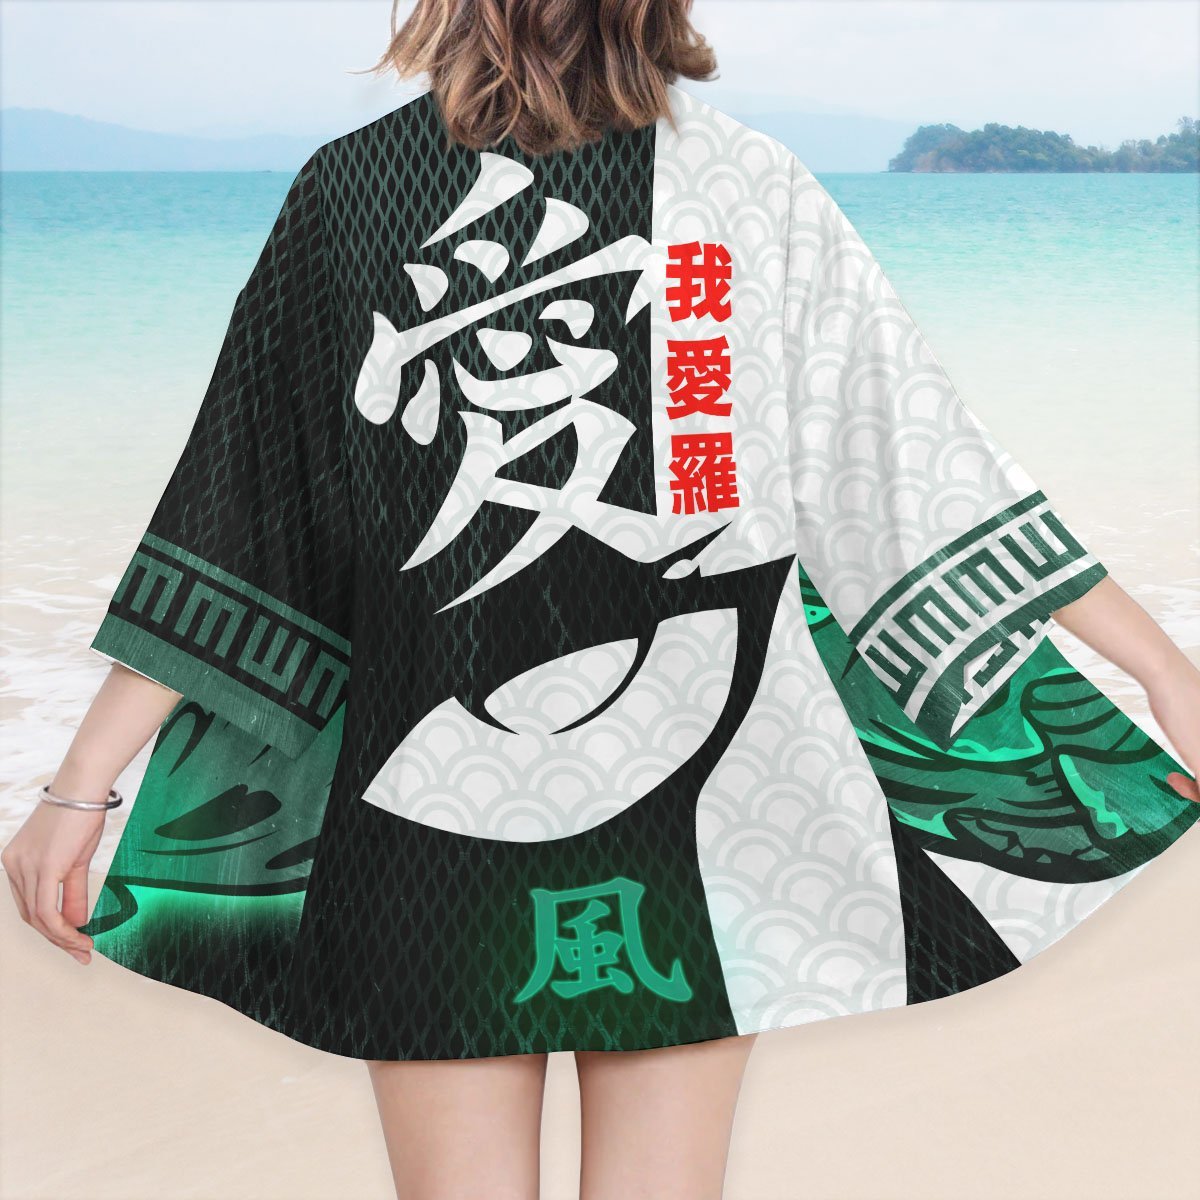 naruto kazekage kimono 831100 - Otaku Treat